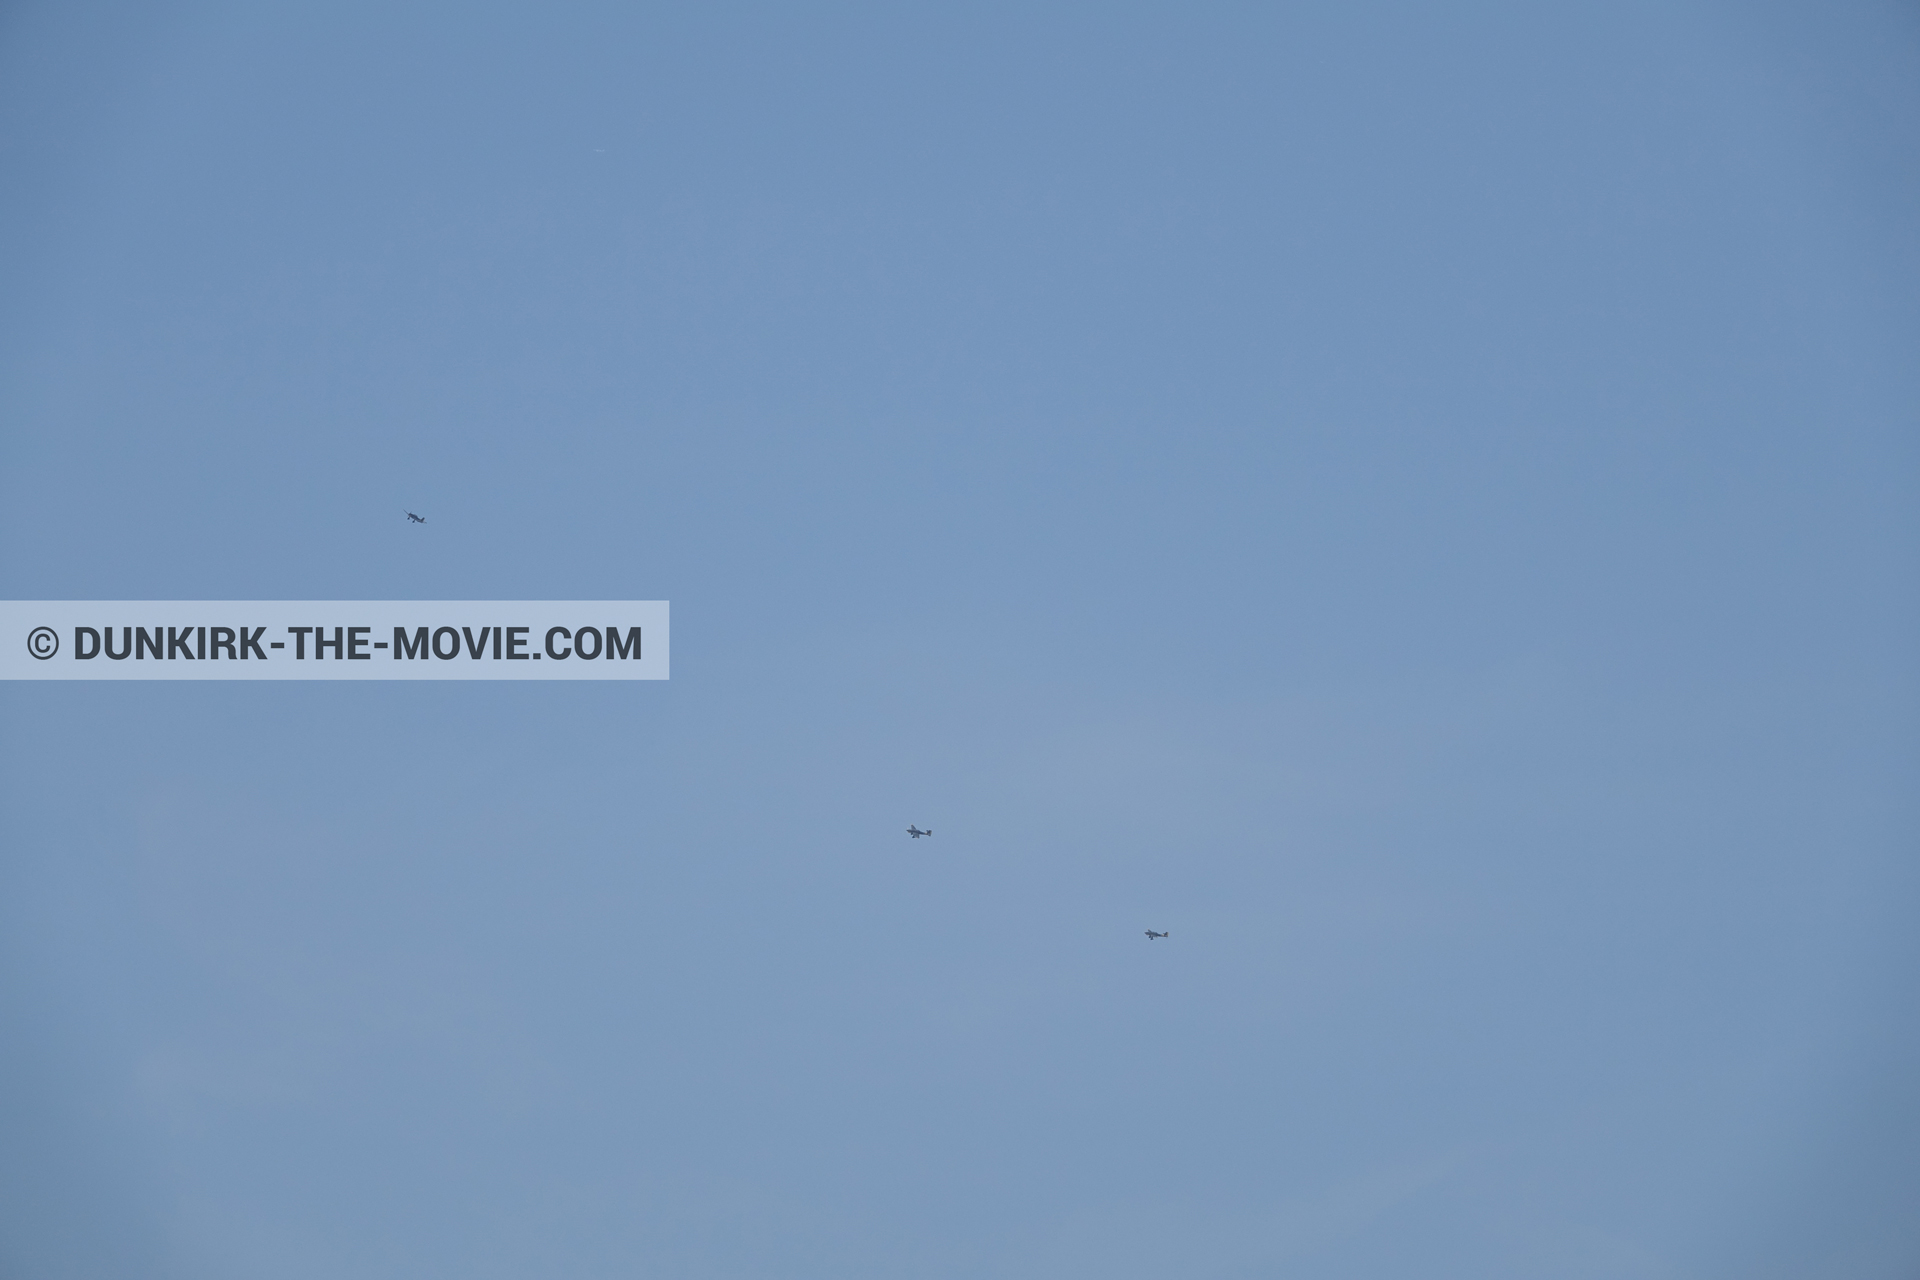 Photo avec avion, ciel bleu,  des dessous du Film Dunkerque de Nolan